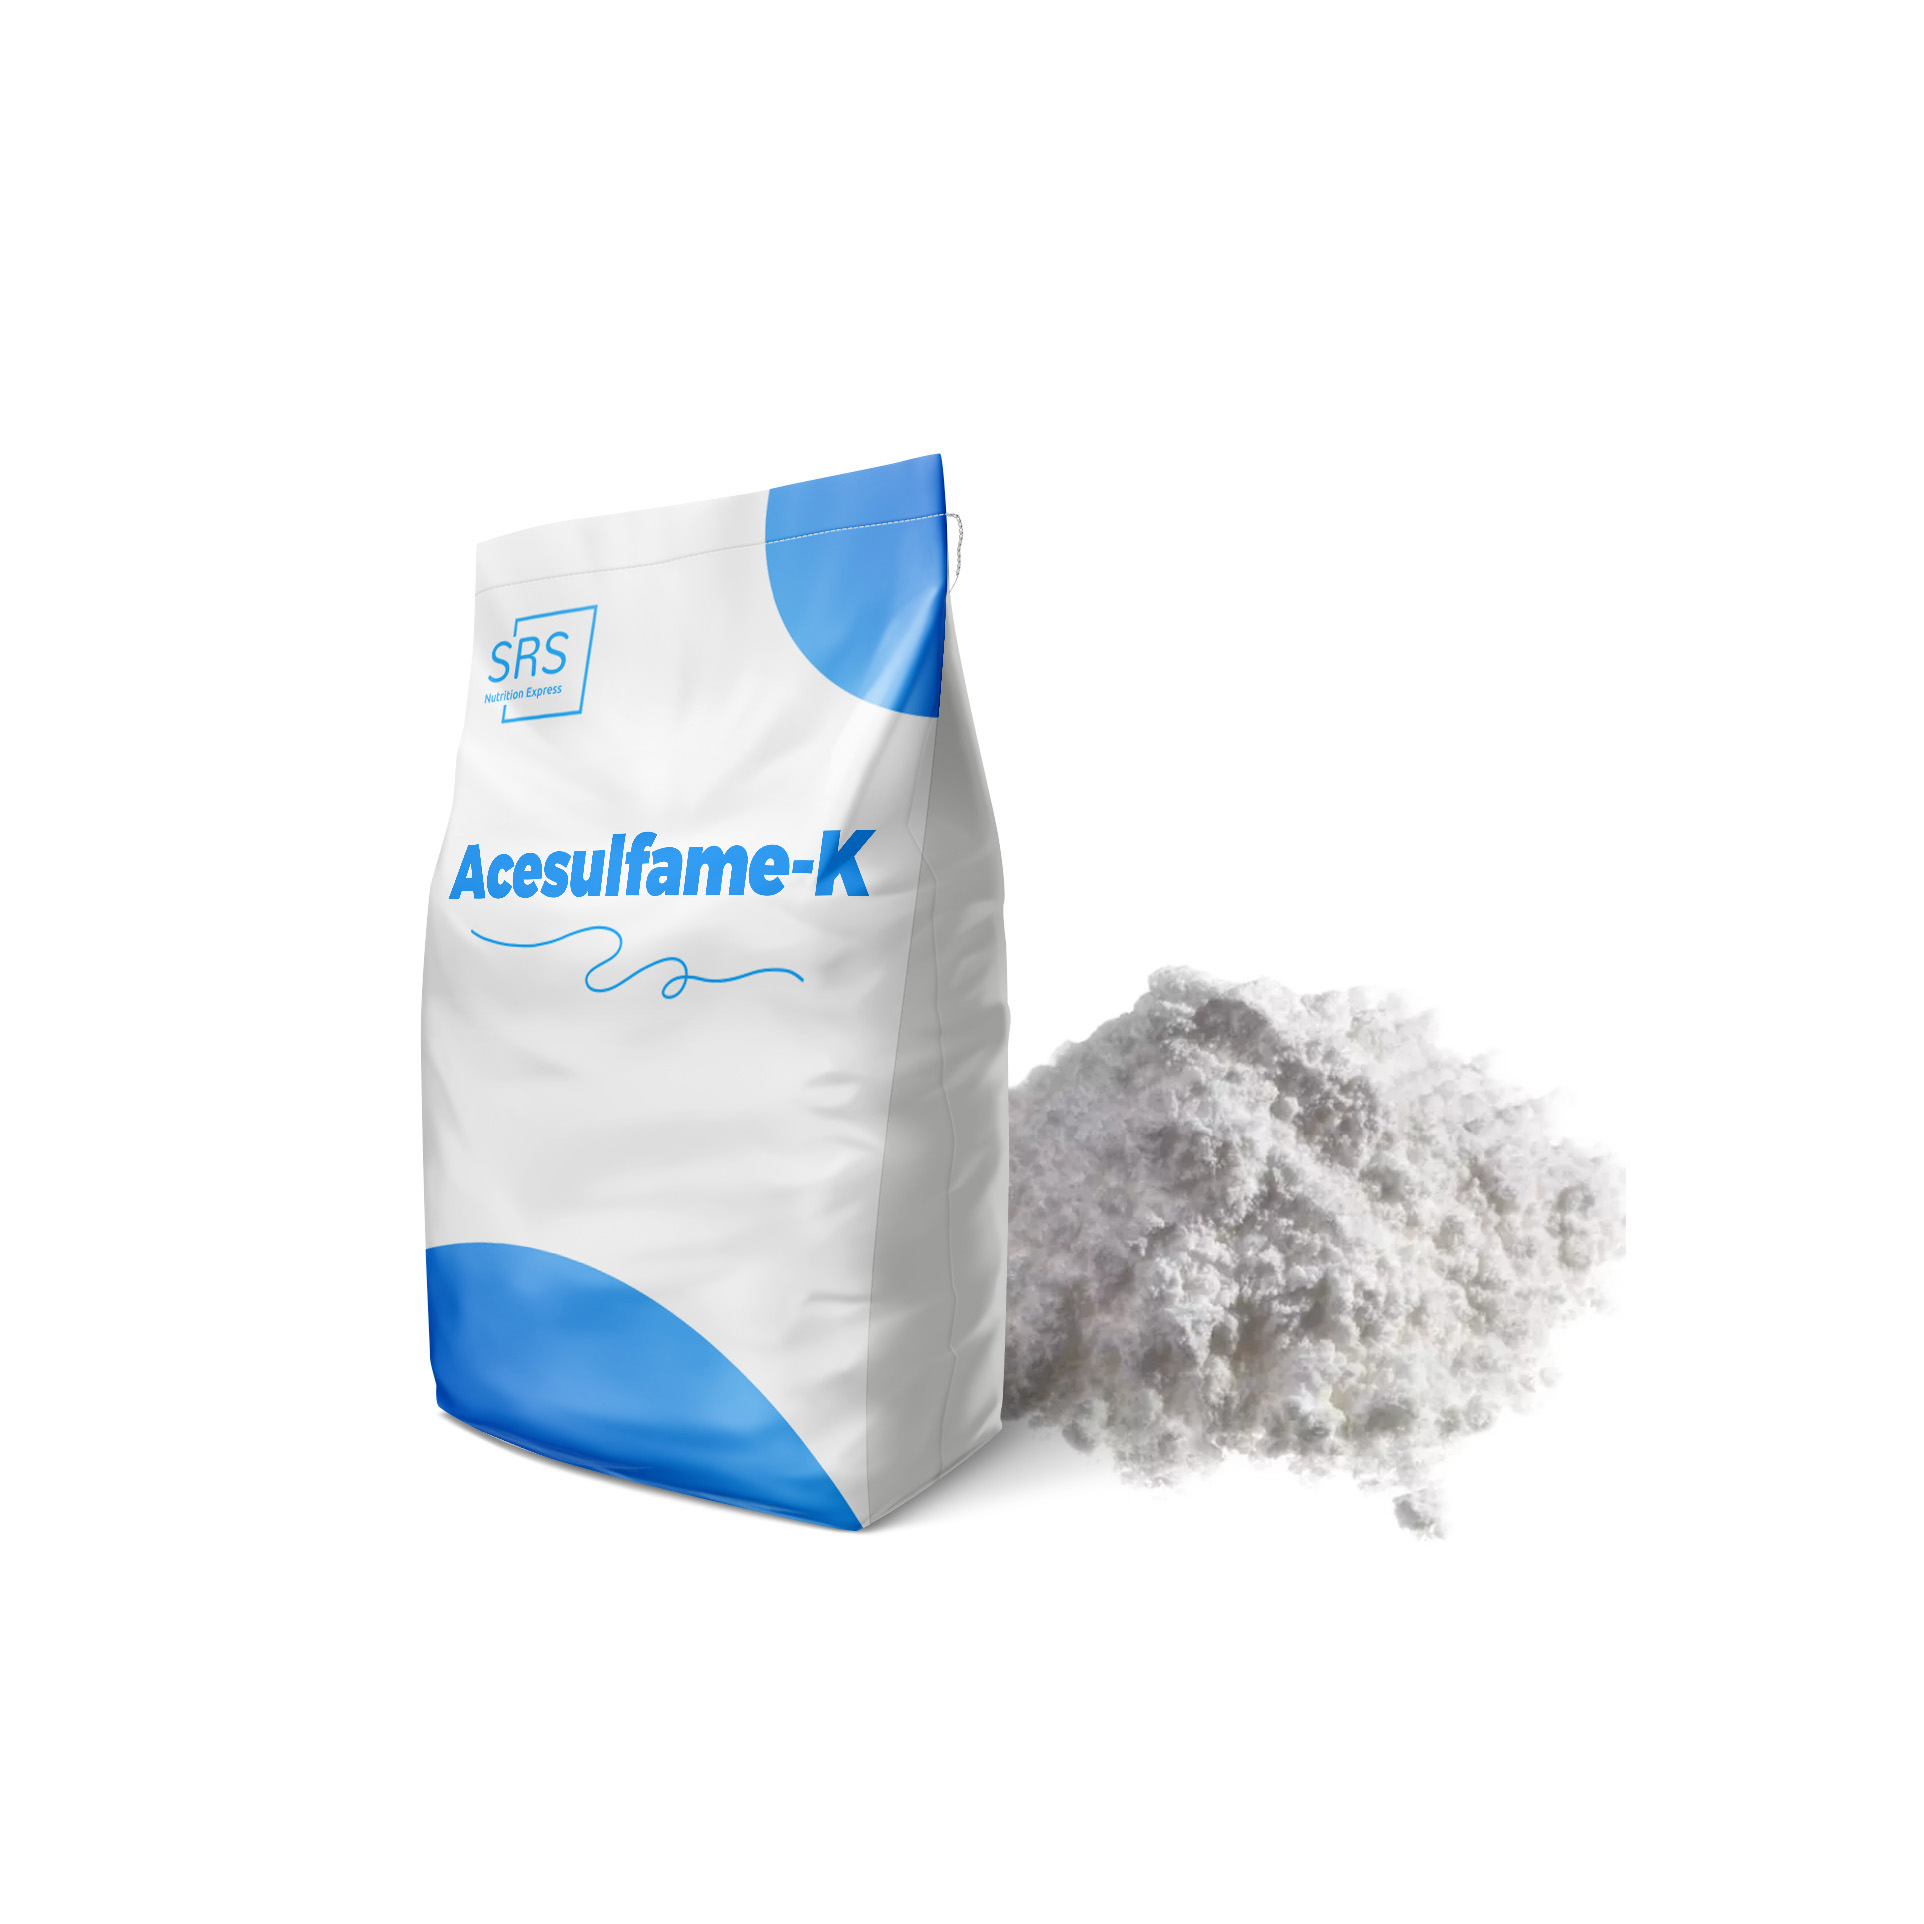 Acesulfame-K multiuso per i sostenitori del prodotto senza zucchero